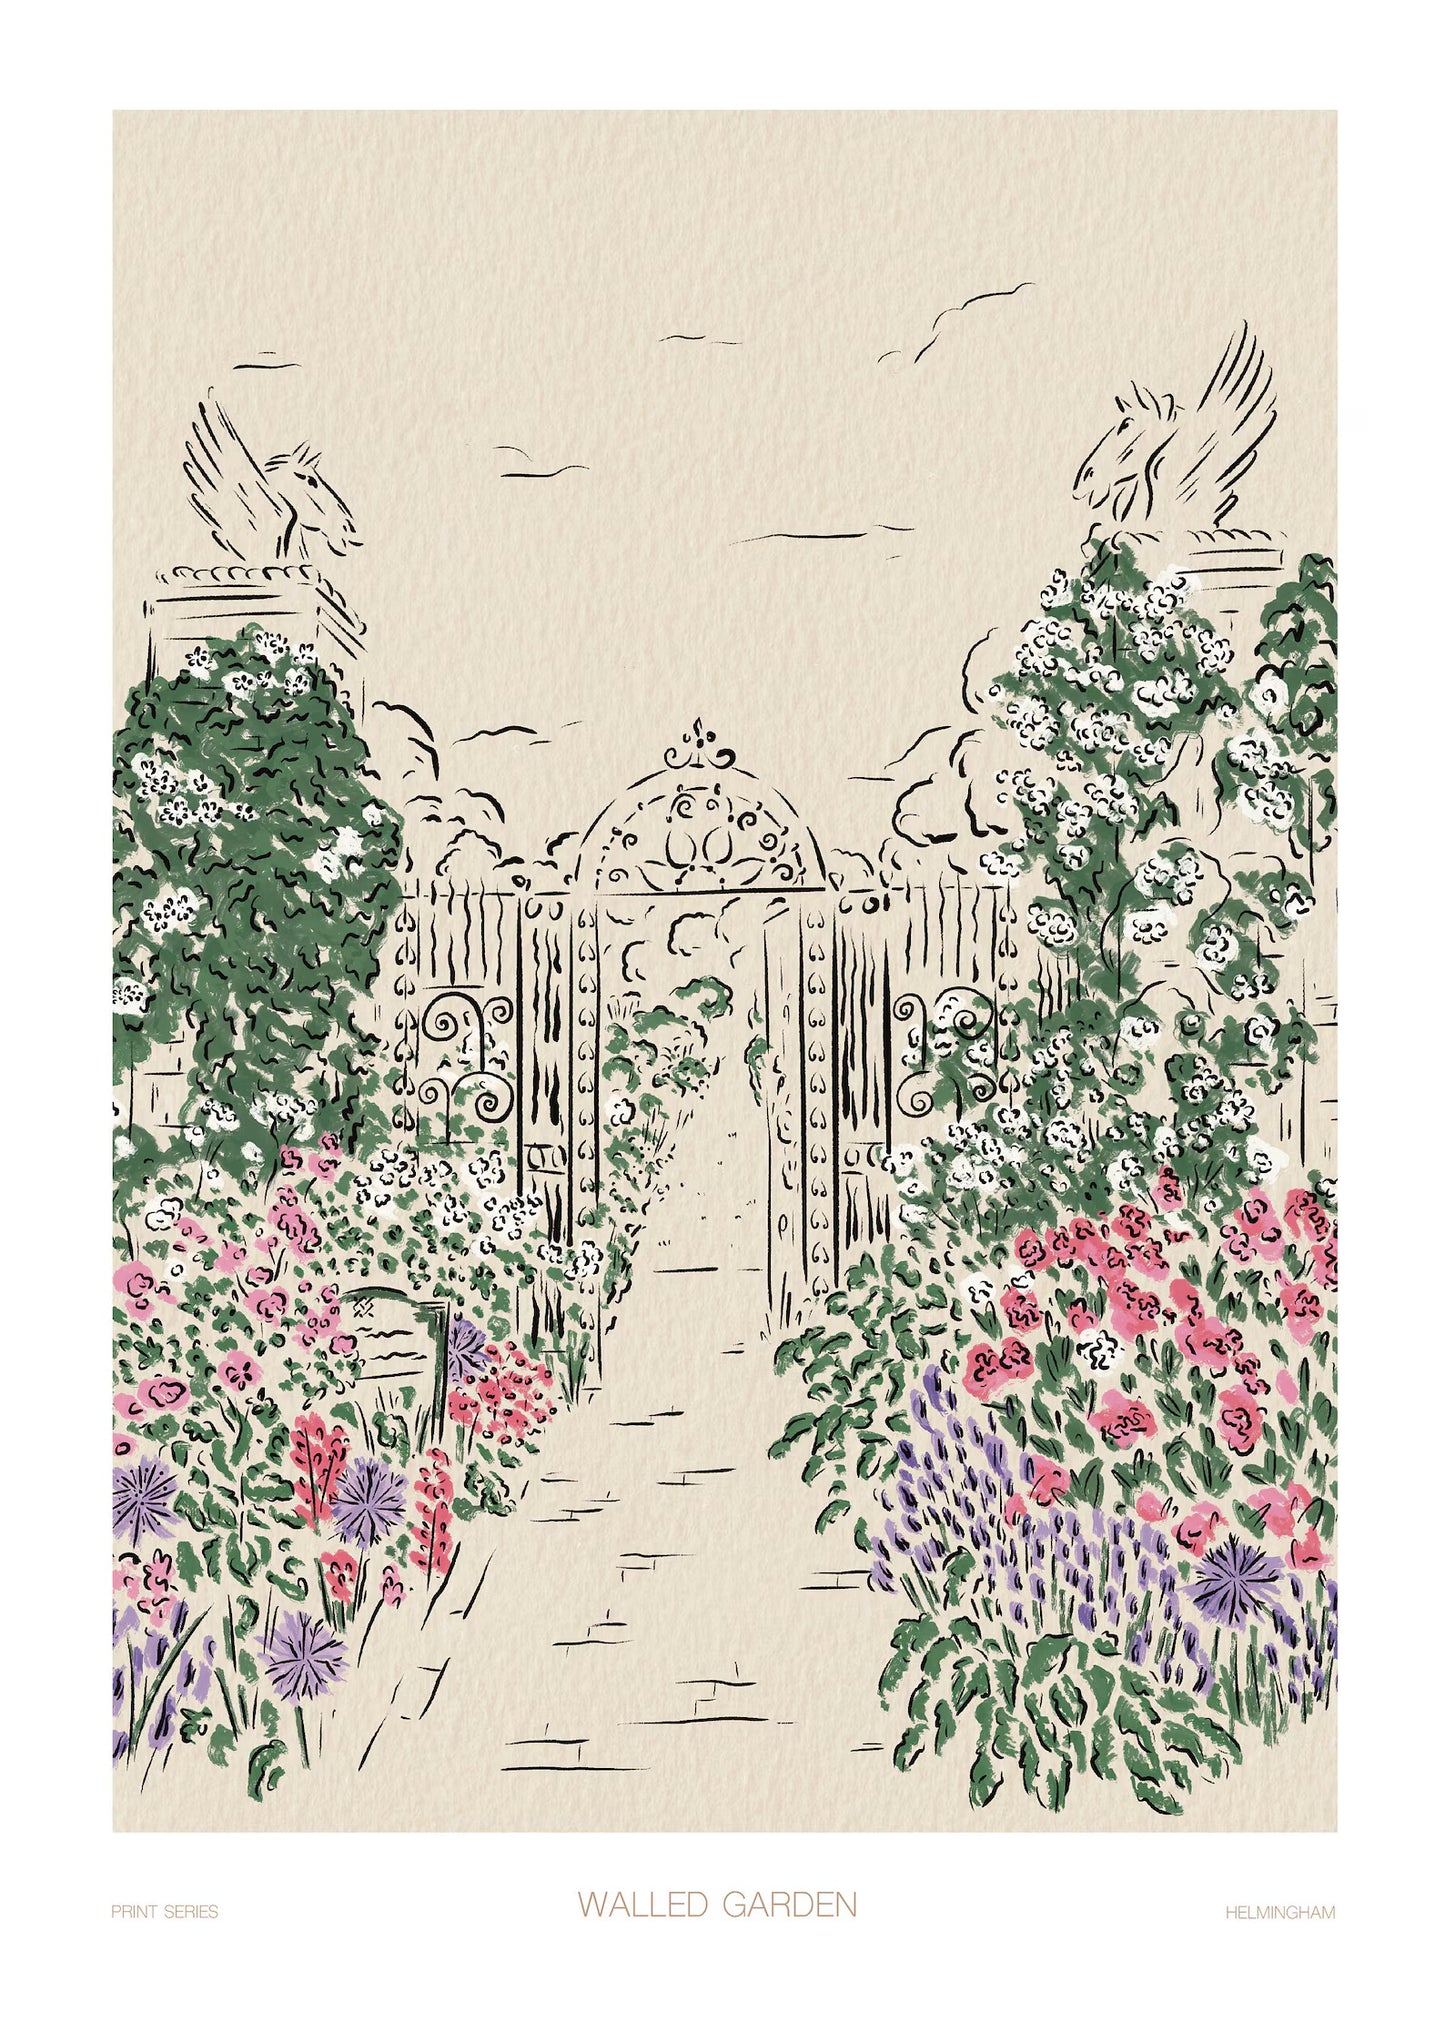 Helmingham Walled Garden Print